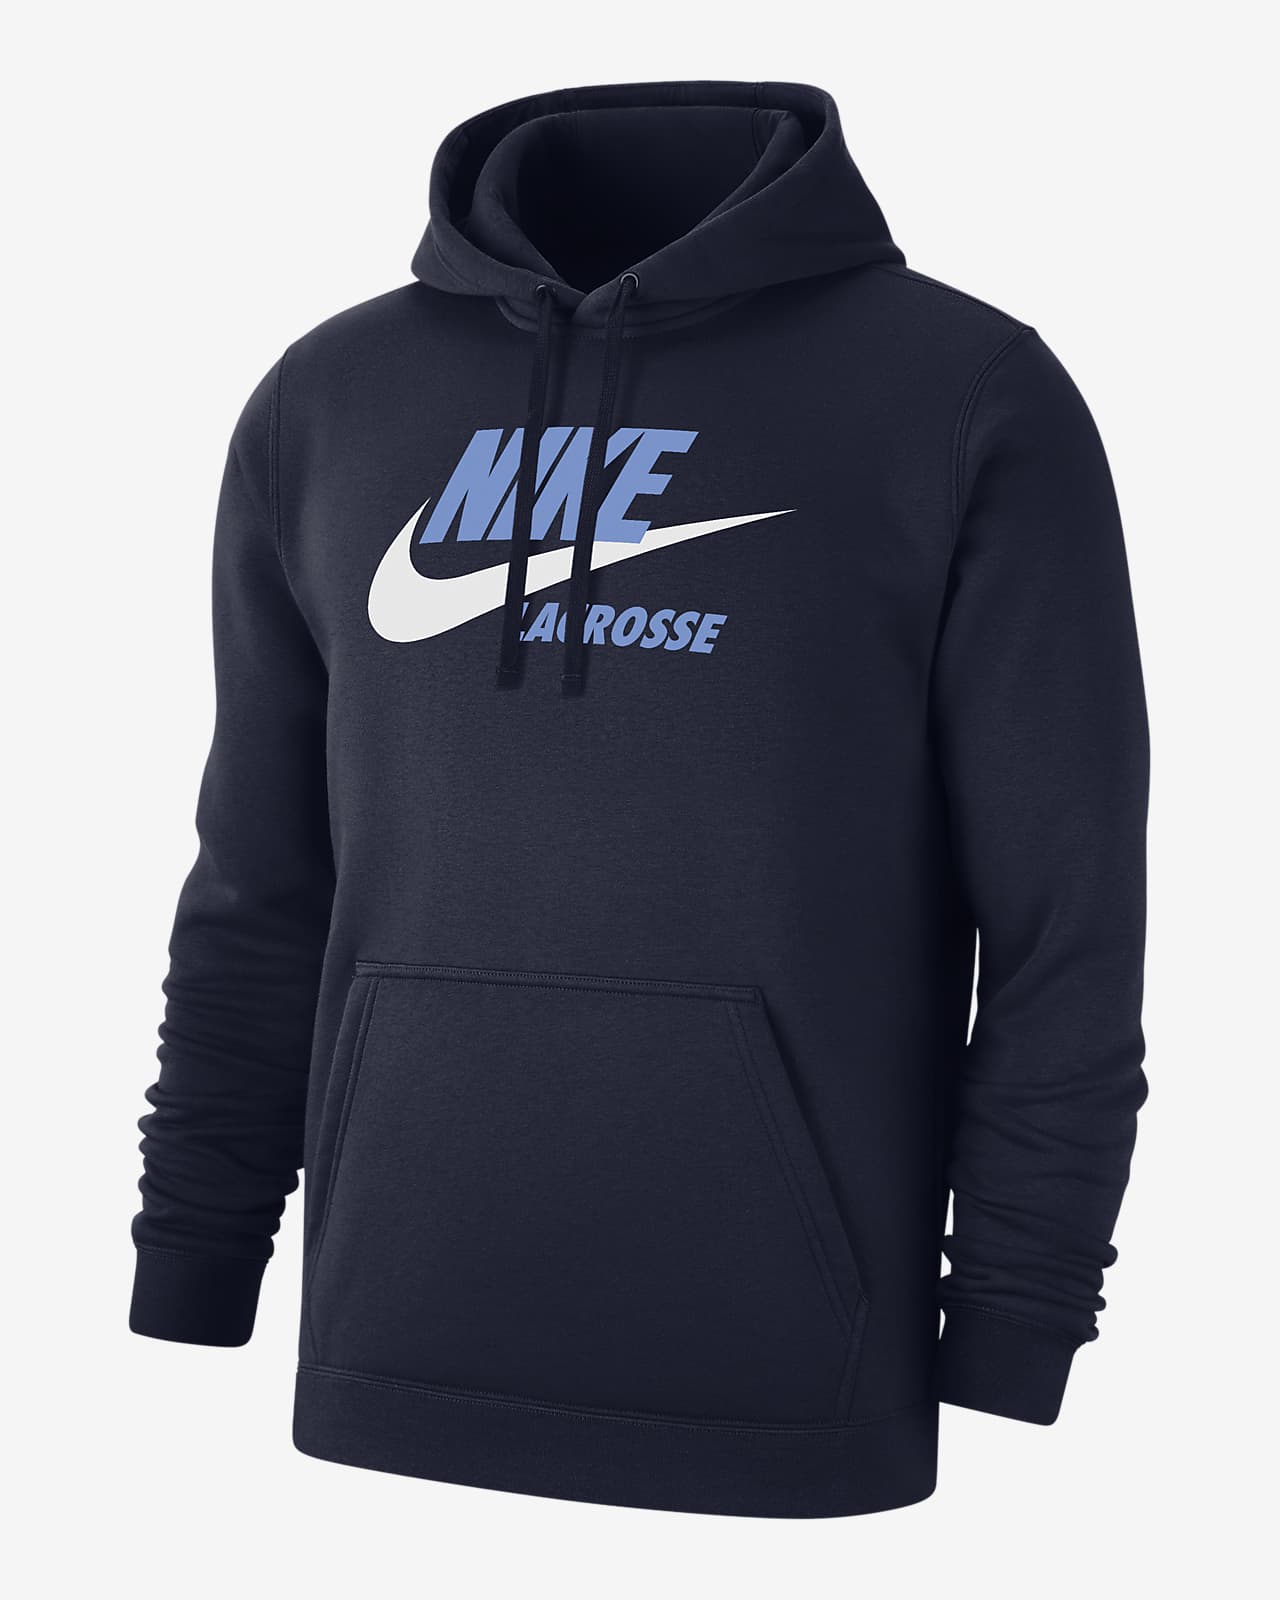 Nike Men's Lacrosse Hoodie